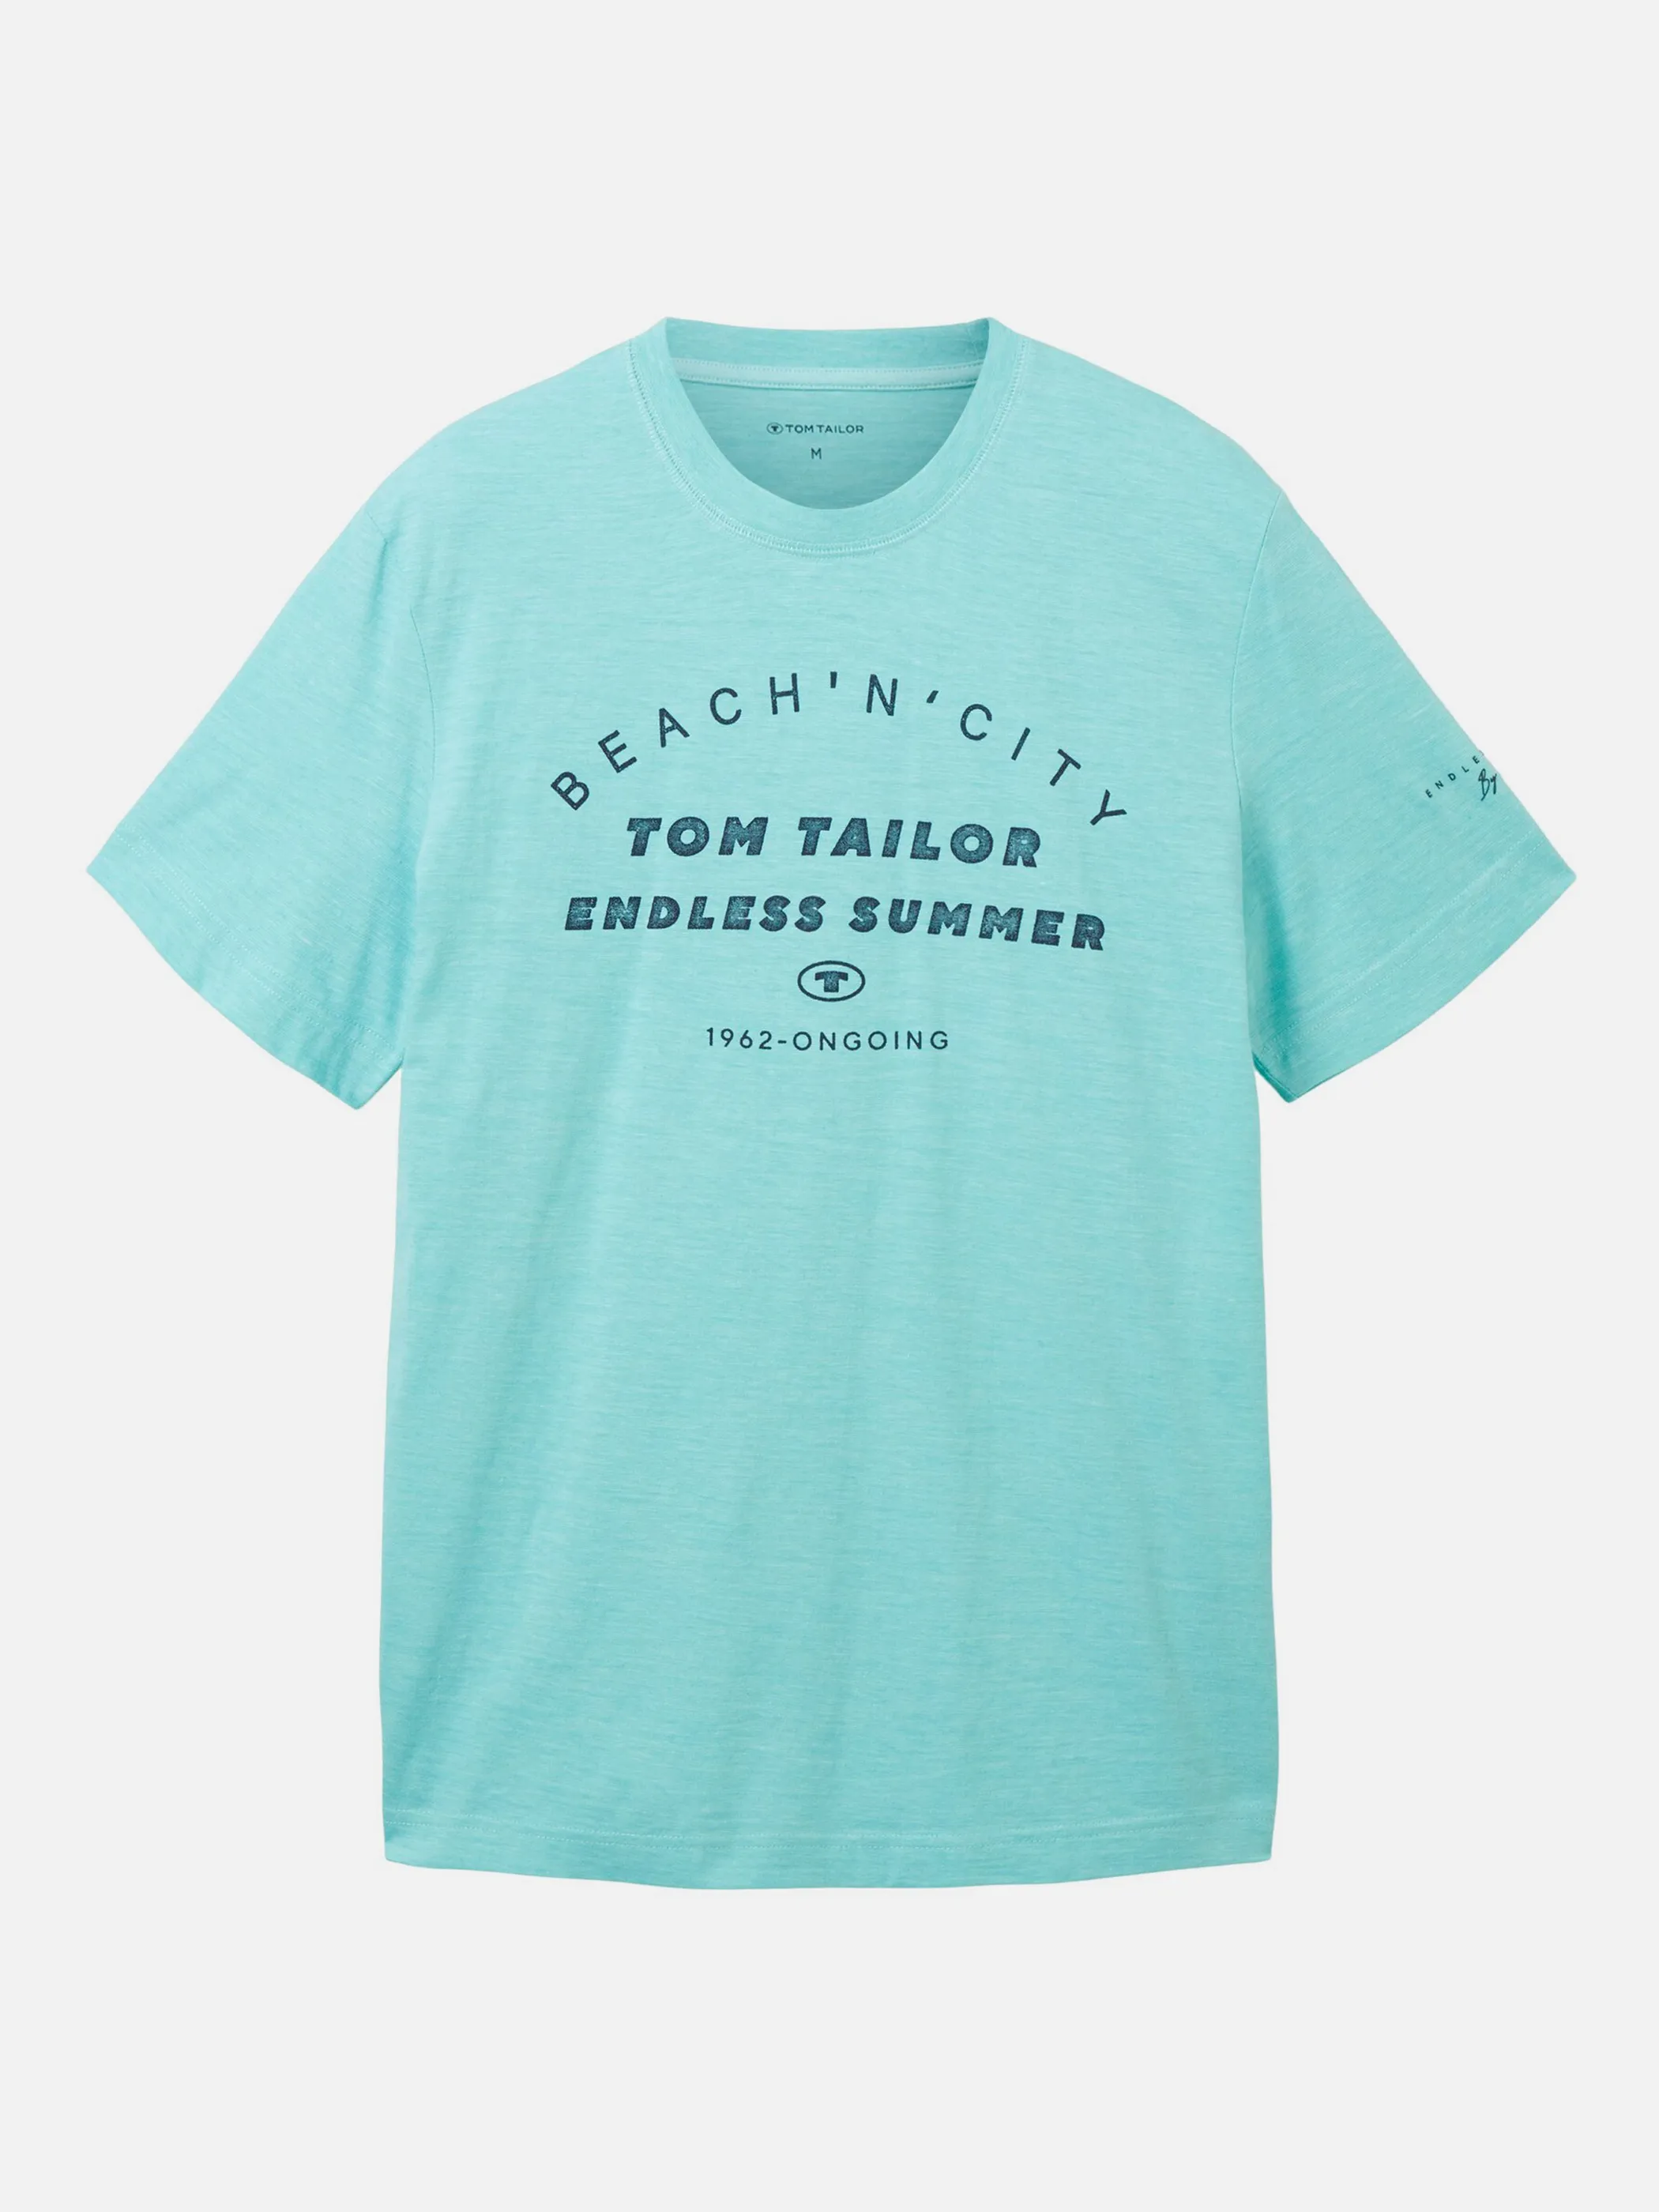 Tom Tailor 1036418 print t-shirt Blau 880562 32036 1